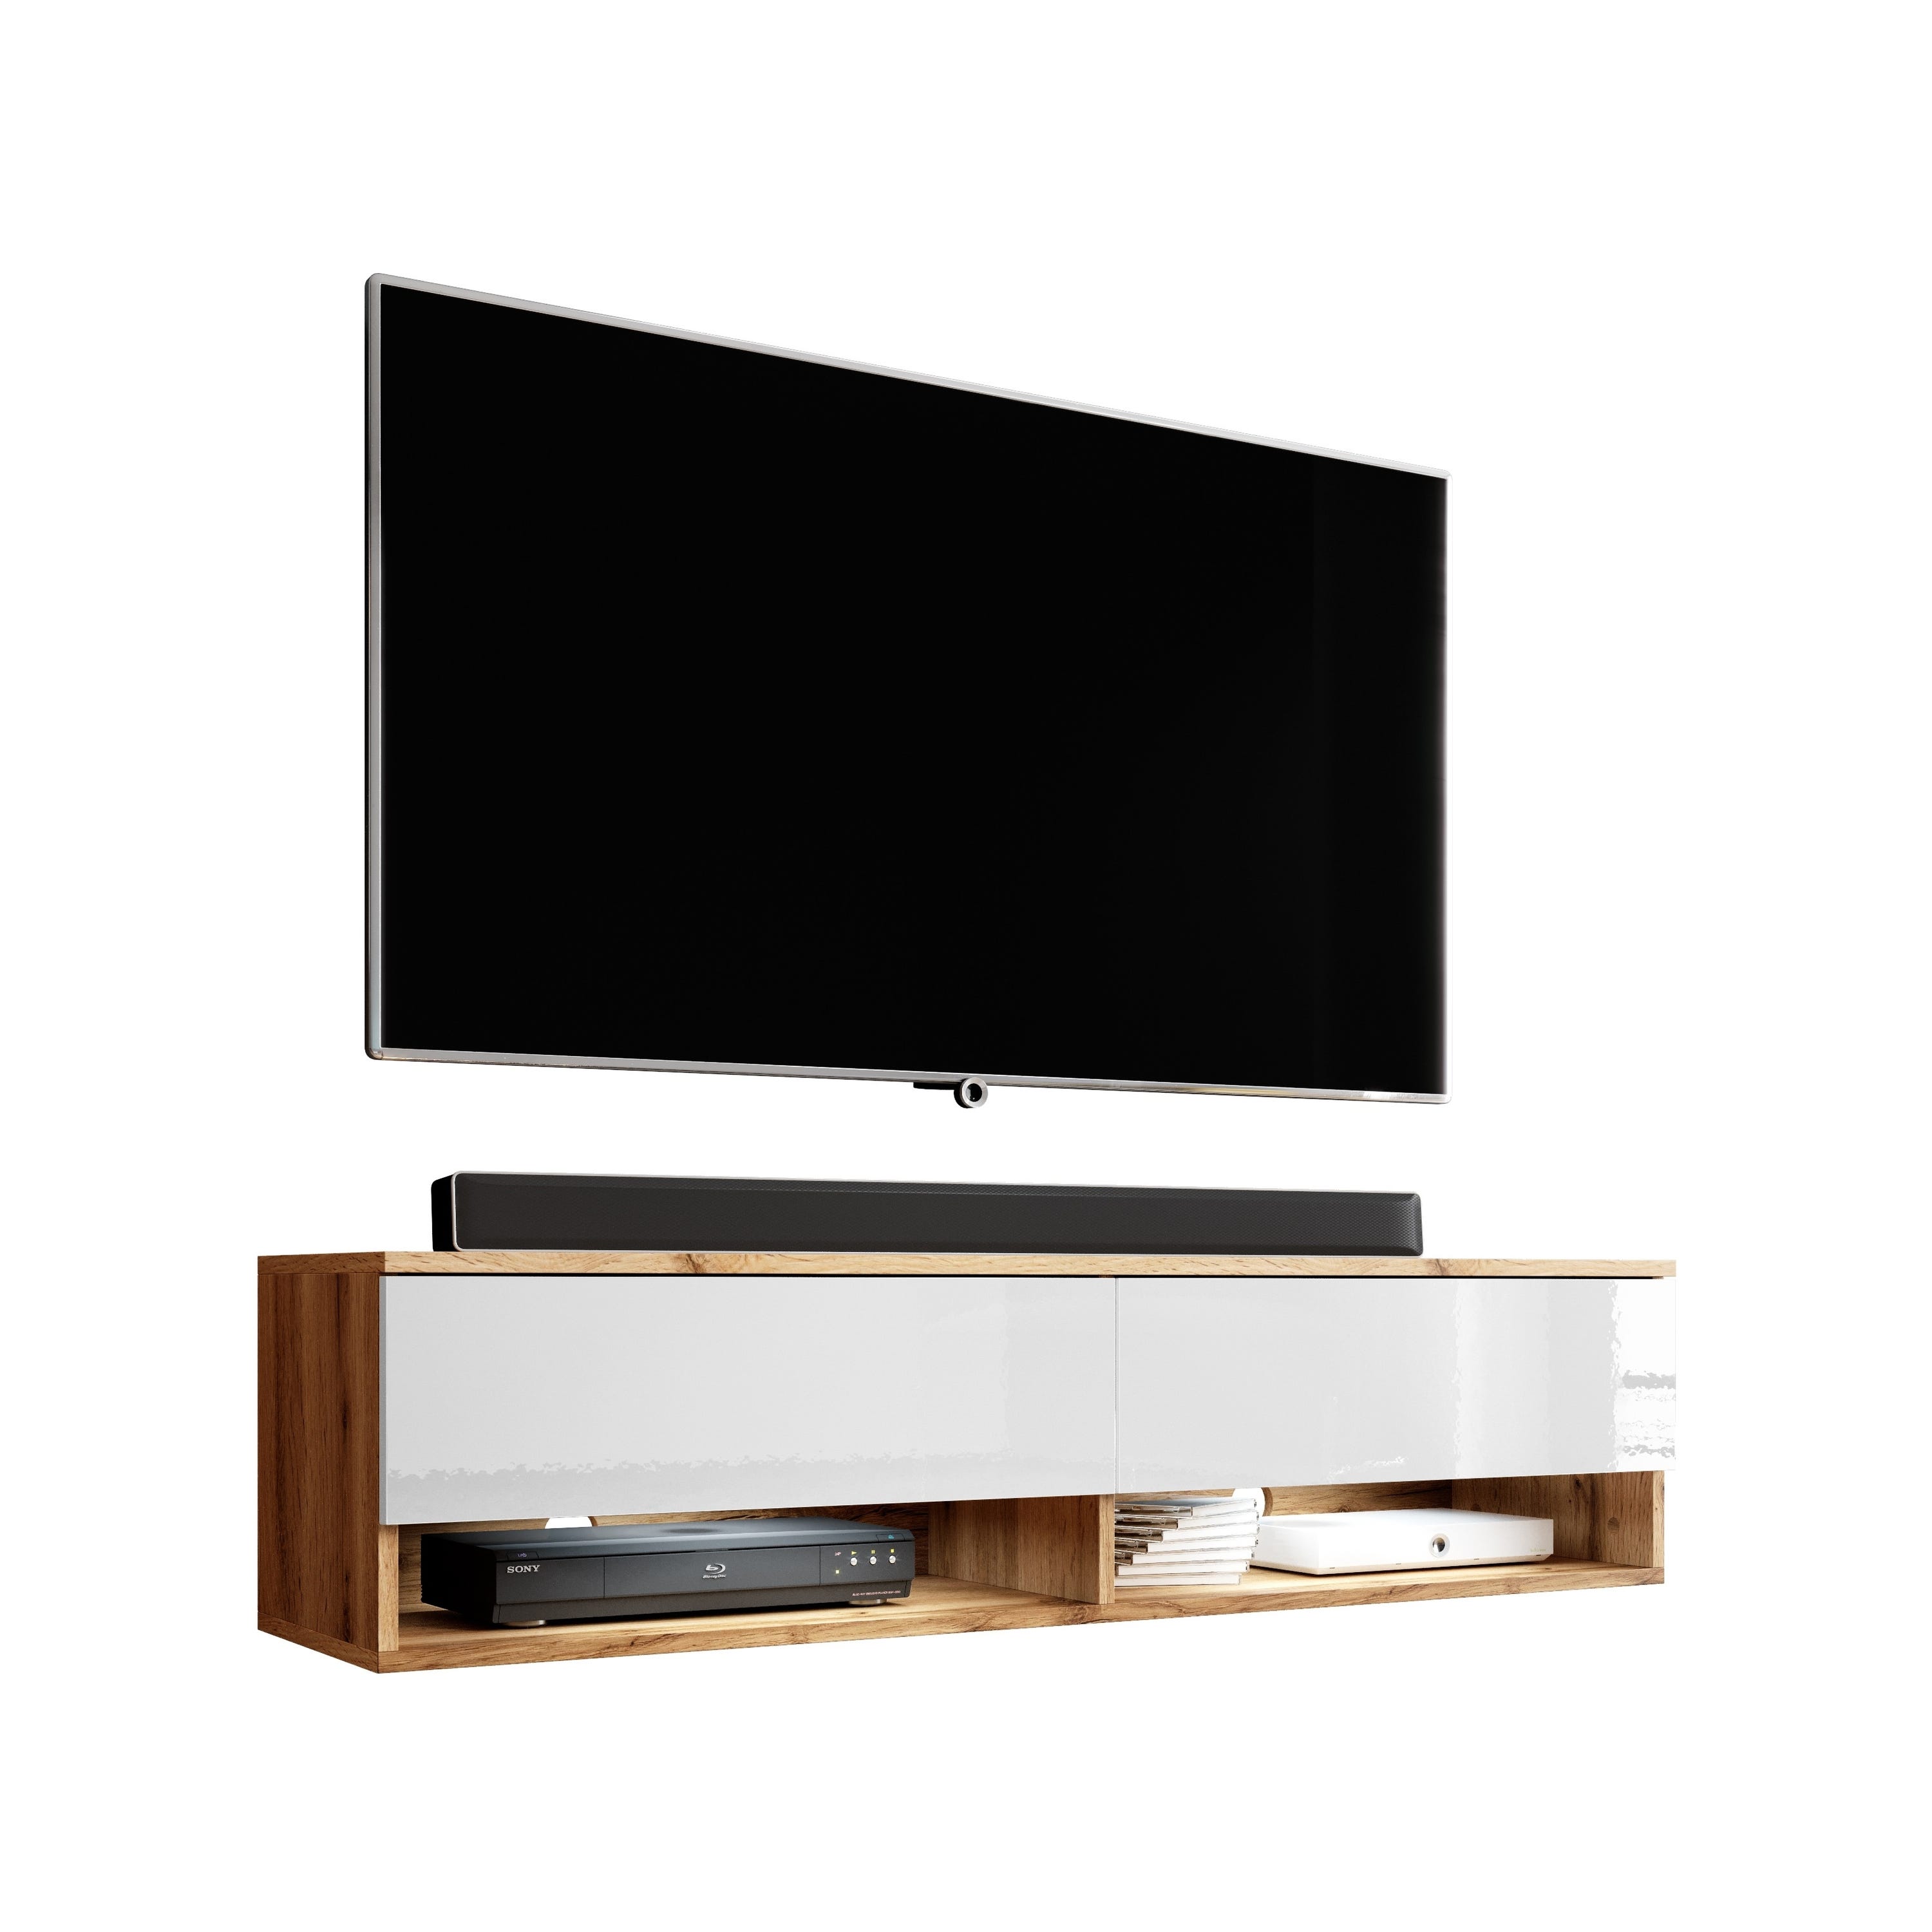 Meuble TV / Meuble de Salon LED Suspendu - 140 cm - Blanc Brillant